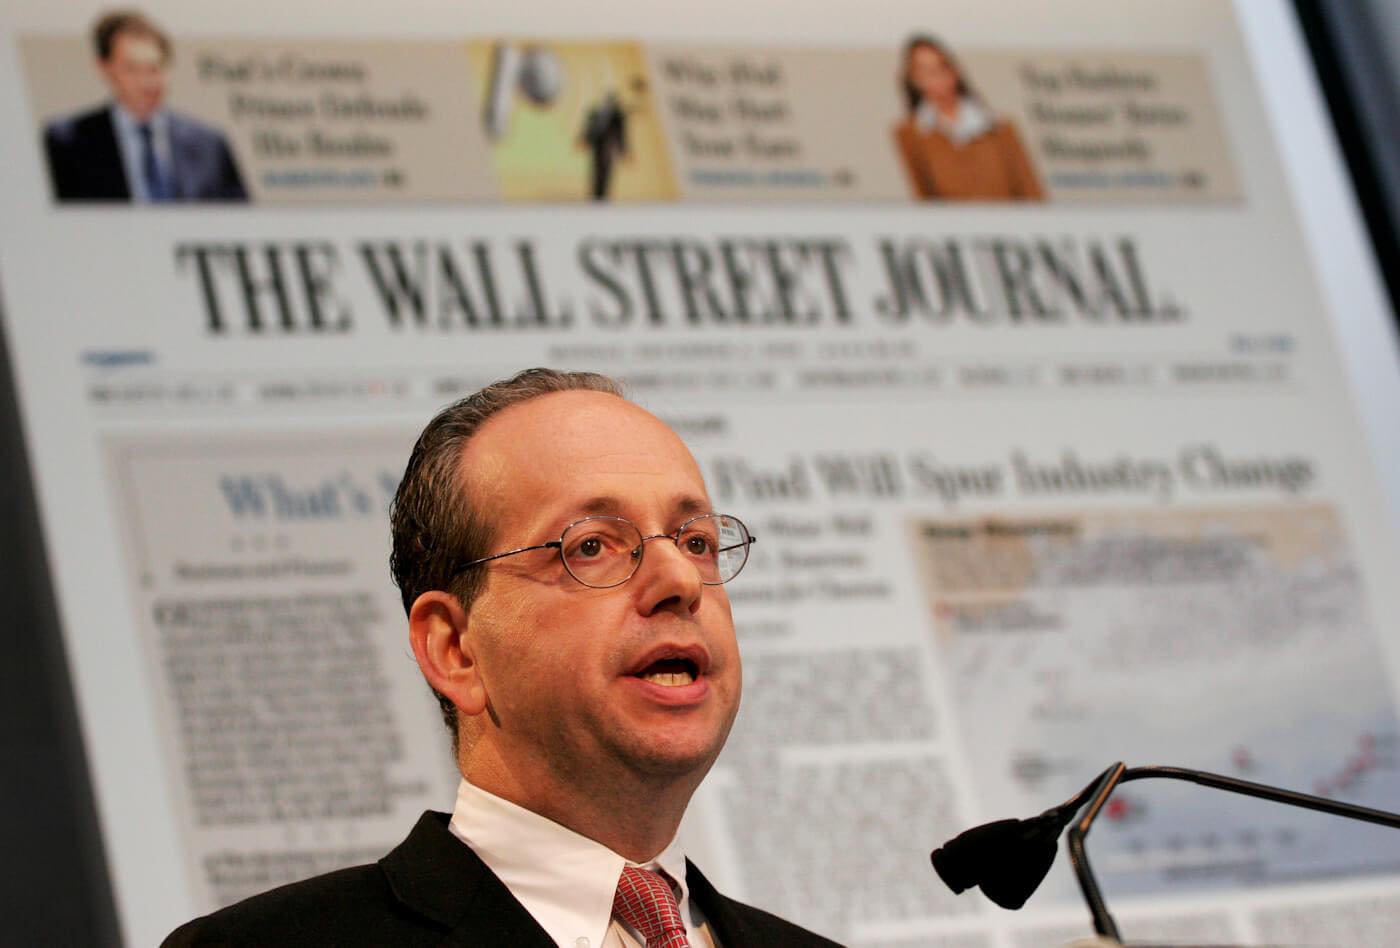 L. Gordon Crovitz, entonces editor de The Wall Street Journal, presenta el rediseño del periódico, el 4 de diciembre de 2006 en Nueva York. Mark Lennihan | AP